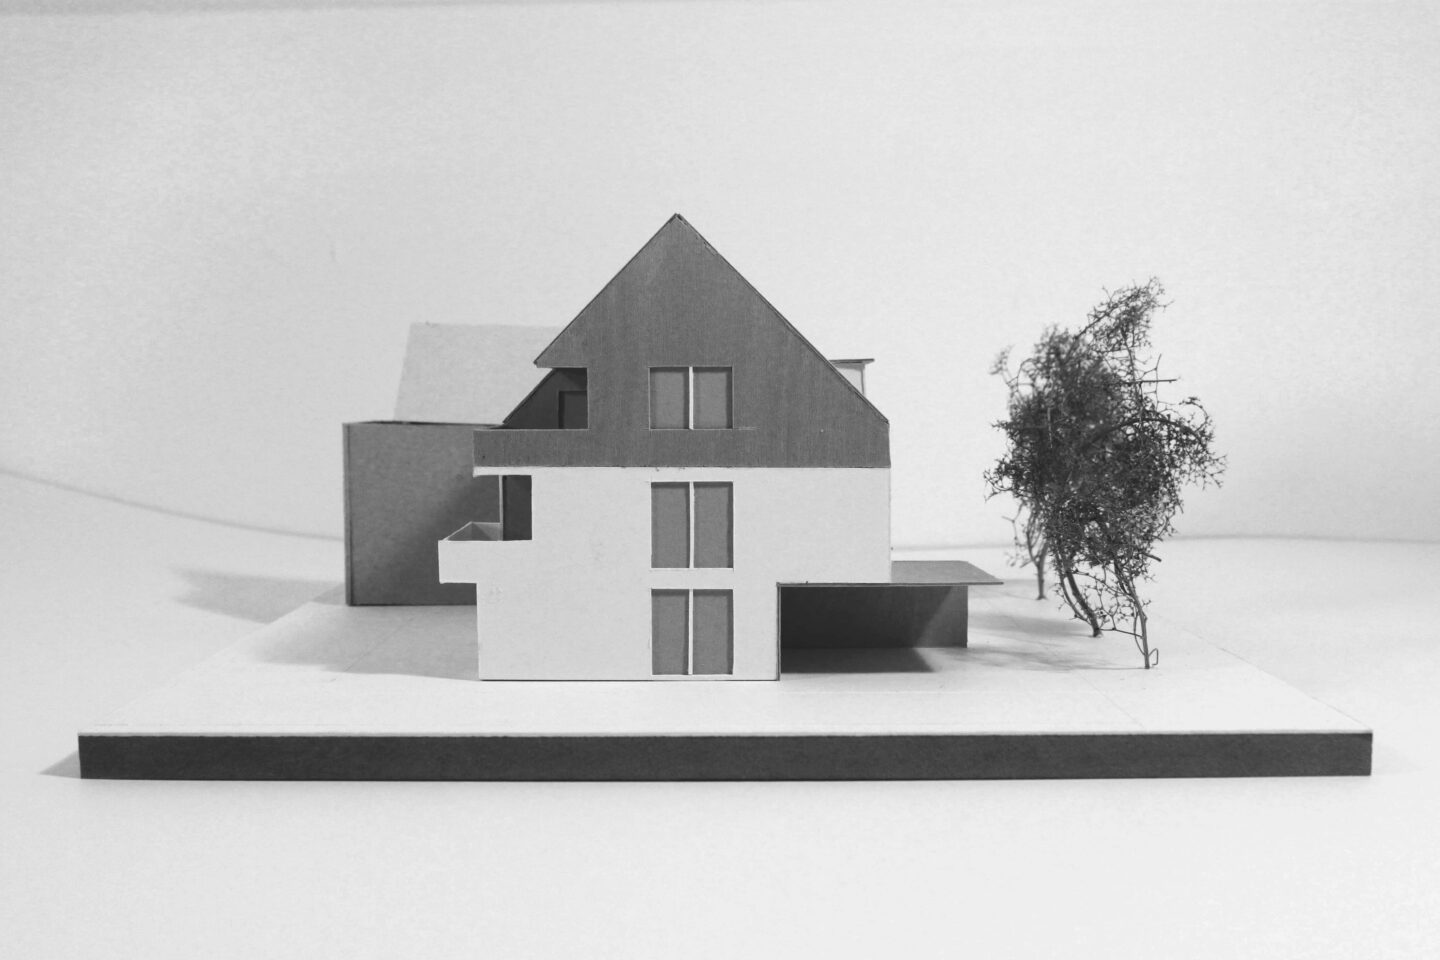 Modell eines neugebauten Doppelhauses für drei Wohneinheiten